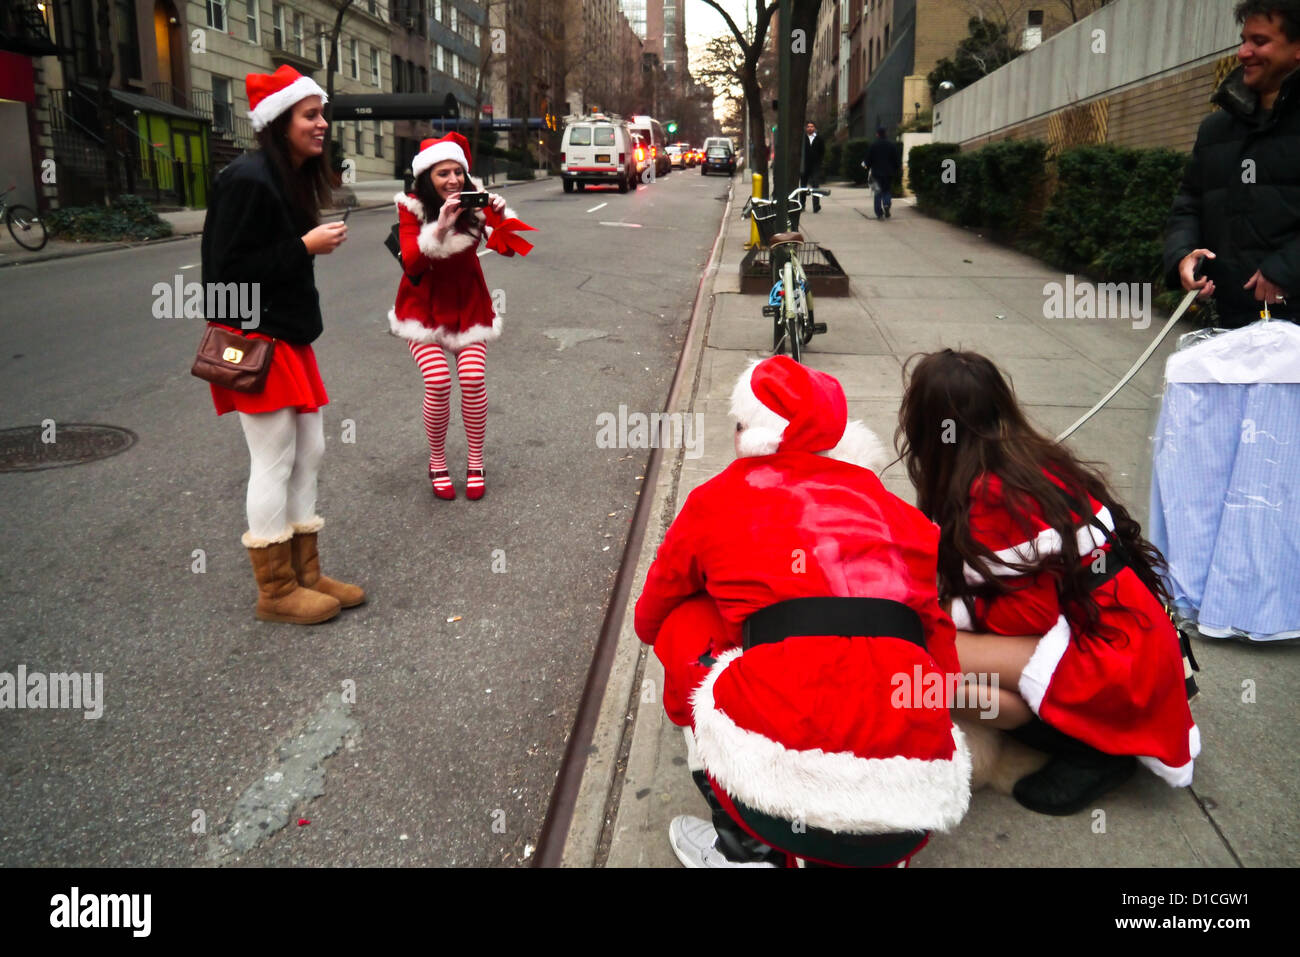 NEW YORK, NY - 15 dicembre: buontemponi vestiti da Babbo Natale di ottenere le loro foto scattata con un cane sulla strada durante l'annuale evento SantaCon Dicembre 15, 2012 in New York City. (Foto di Donald Bowers) Foto Stock